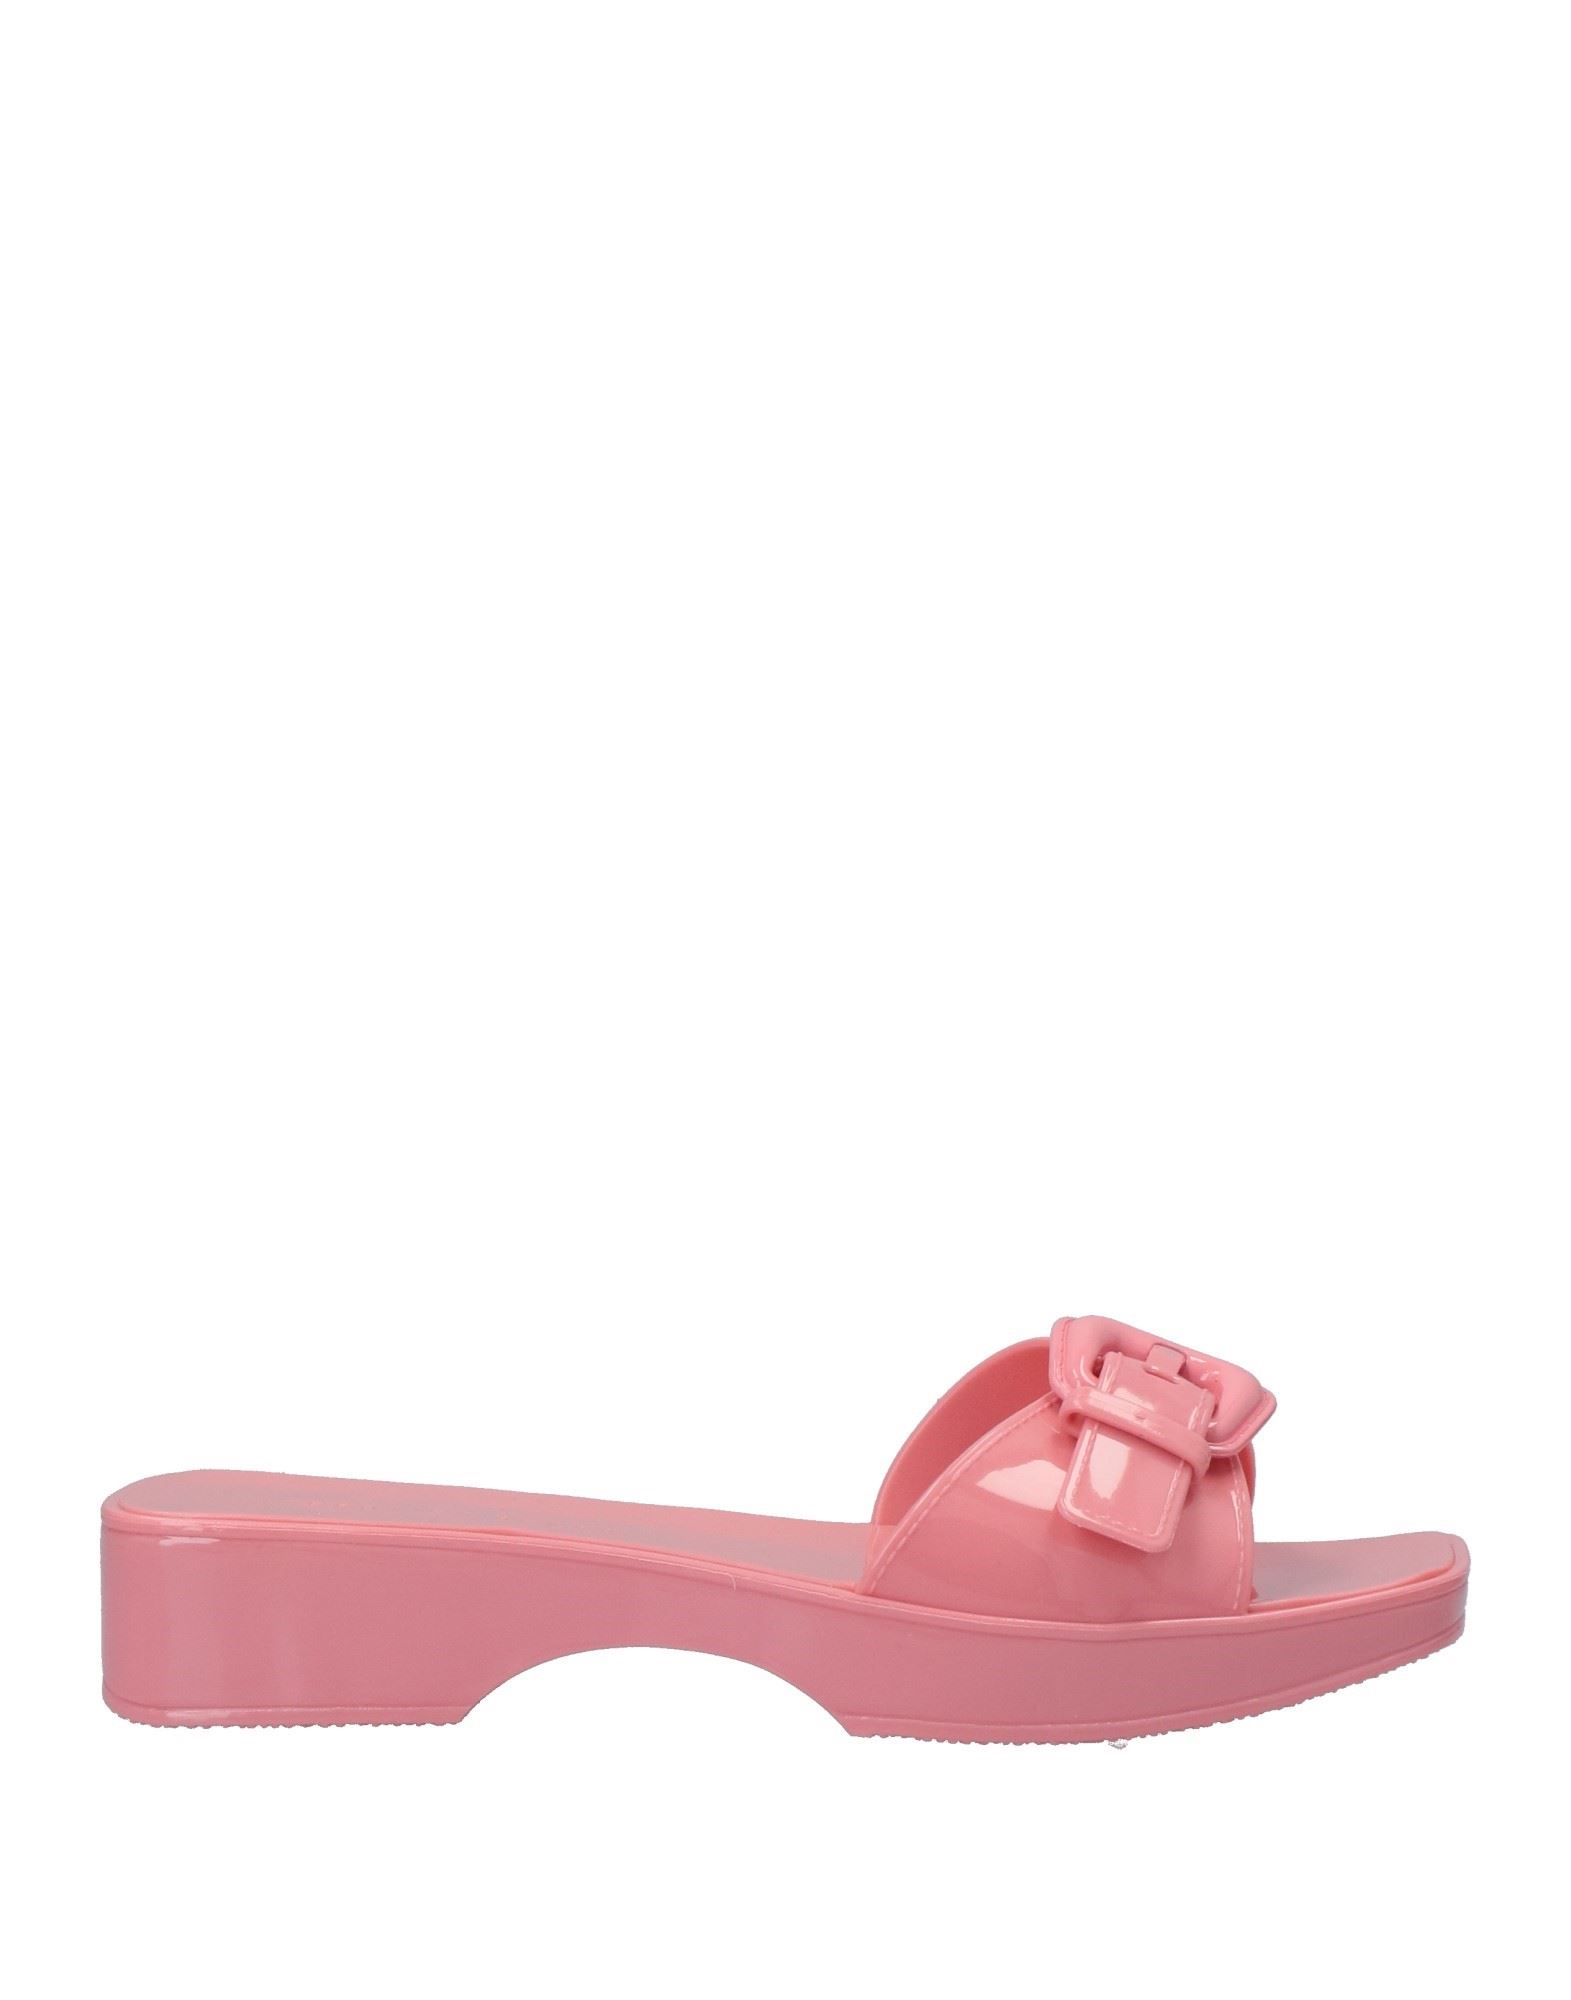 Veronica Beard Sandals In Pink